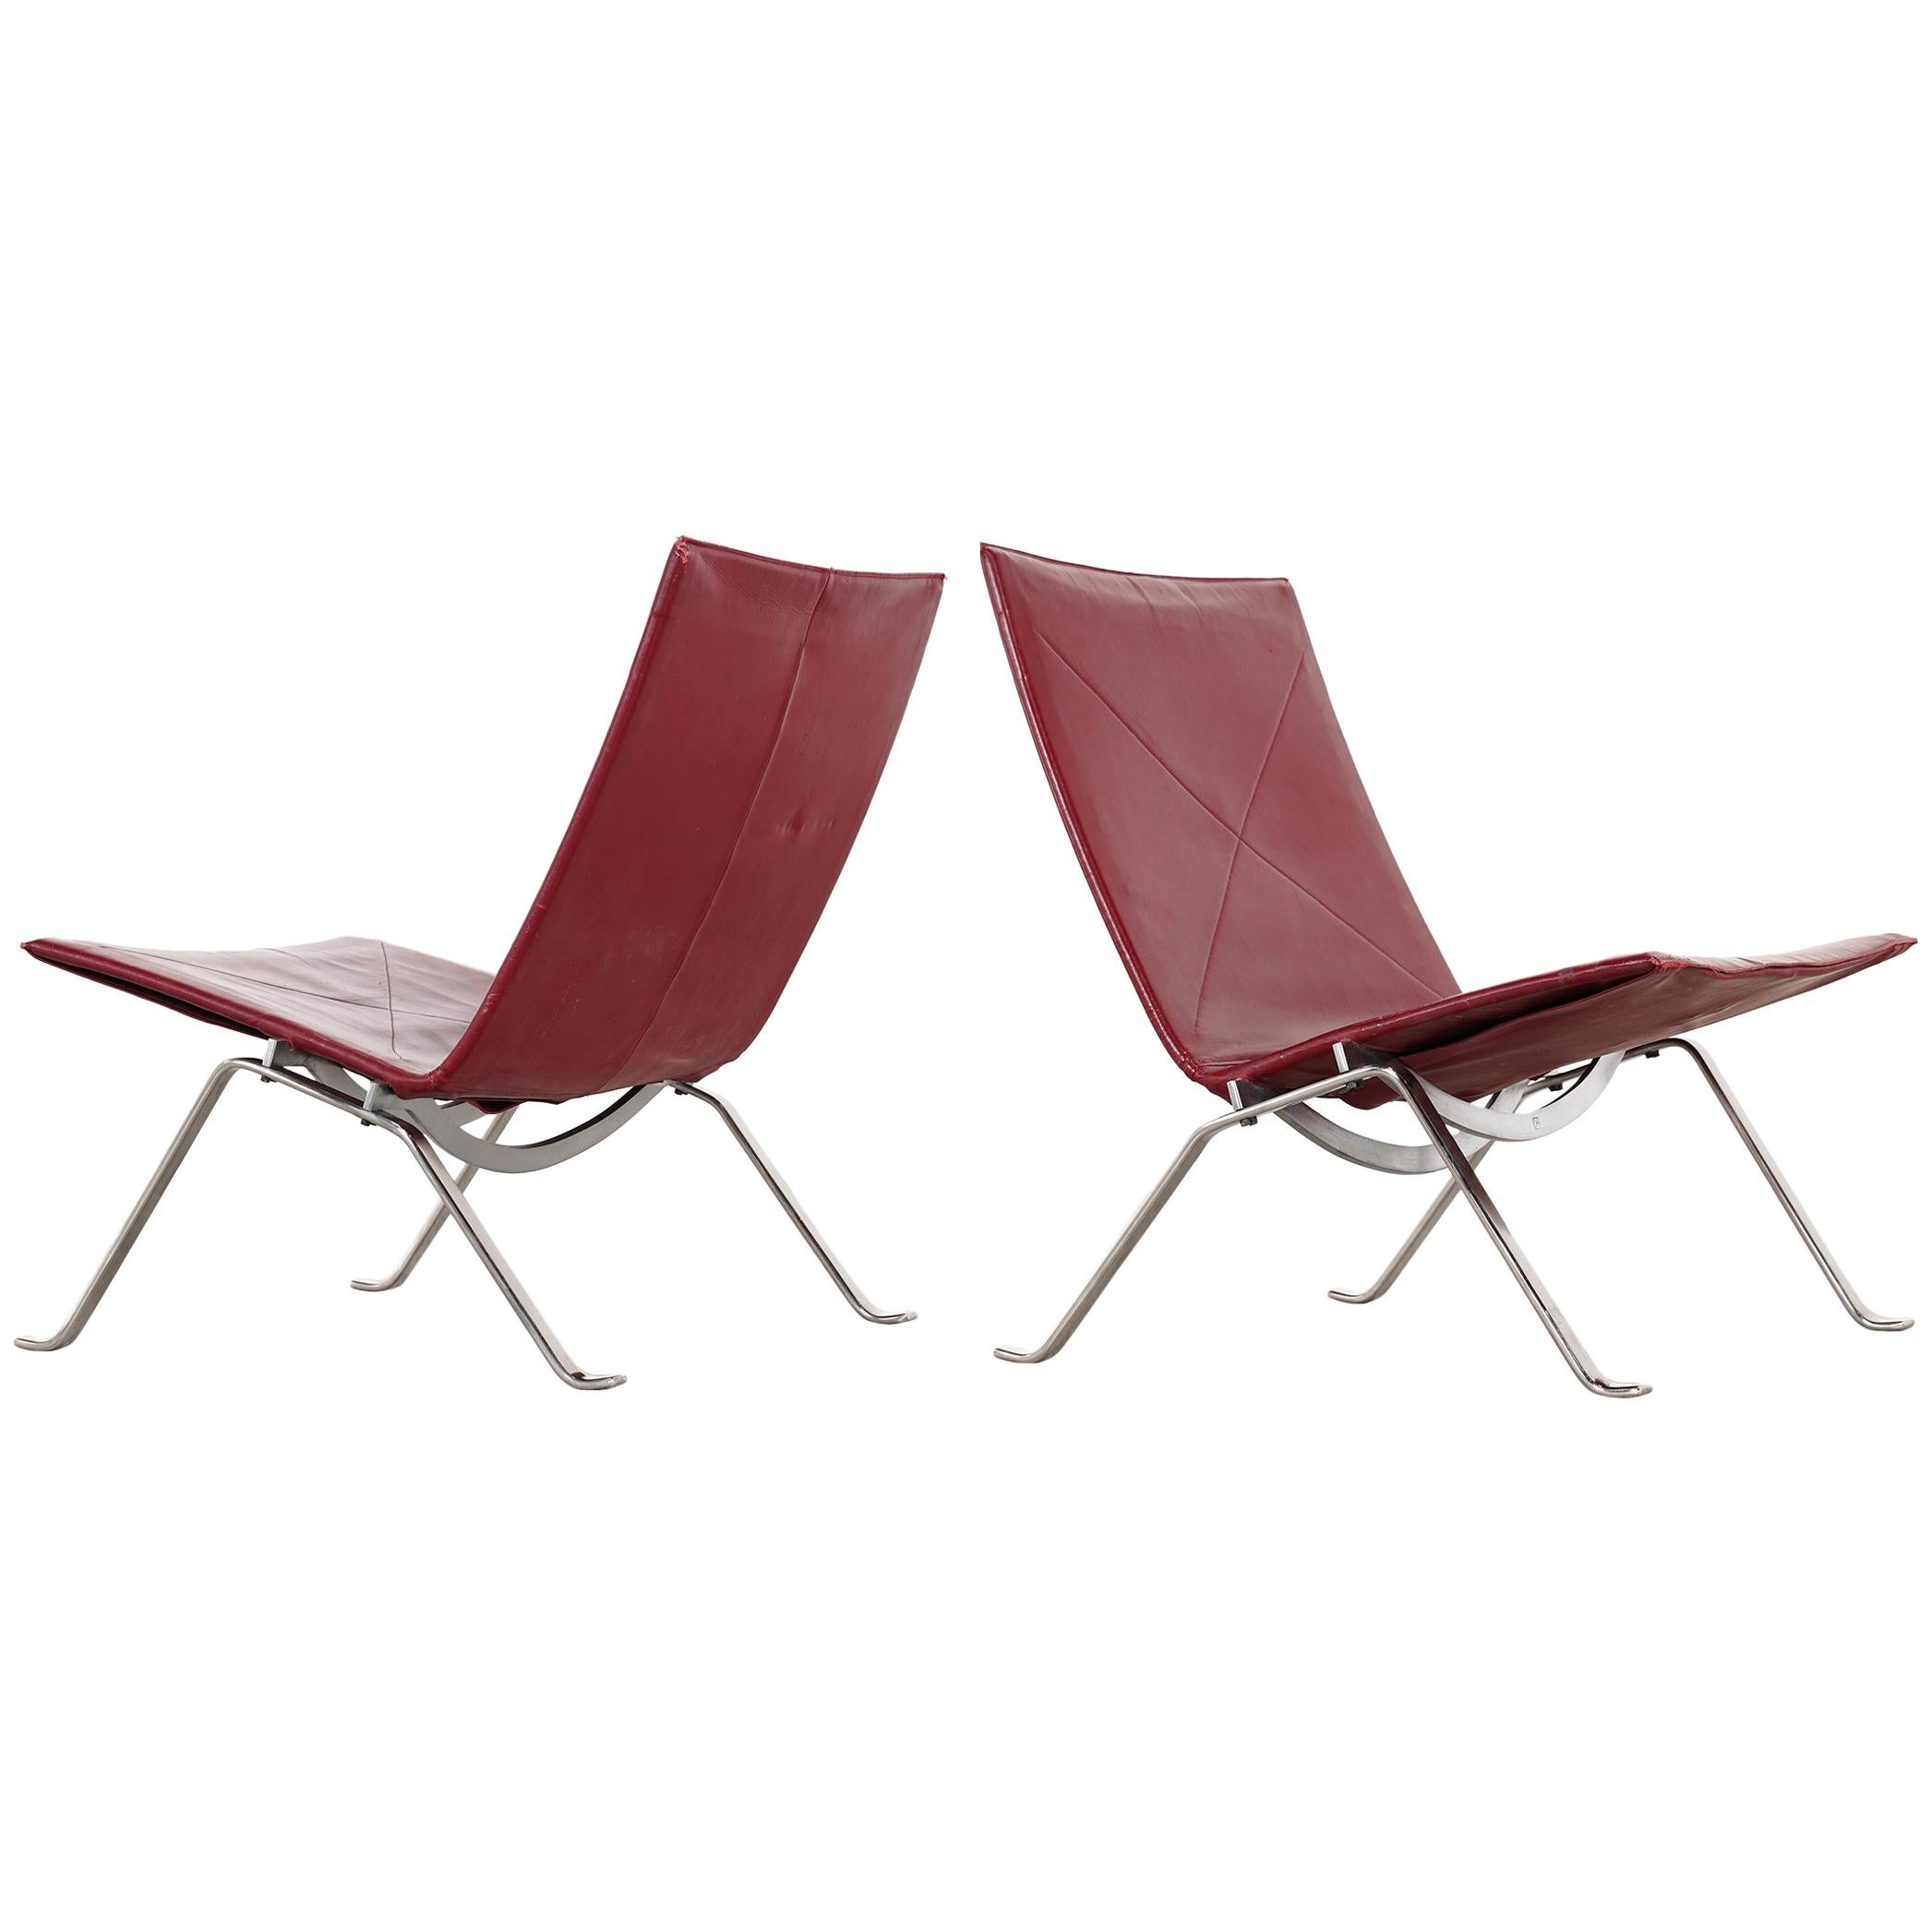 2 Poul Kjaerholm PK22 Lounge Chair, 1956 for E. Kold Christensen, Denmark